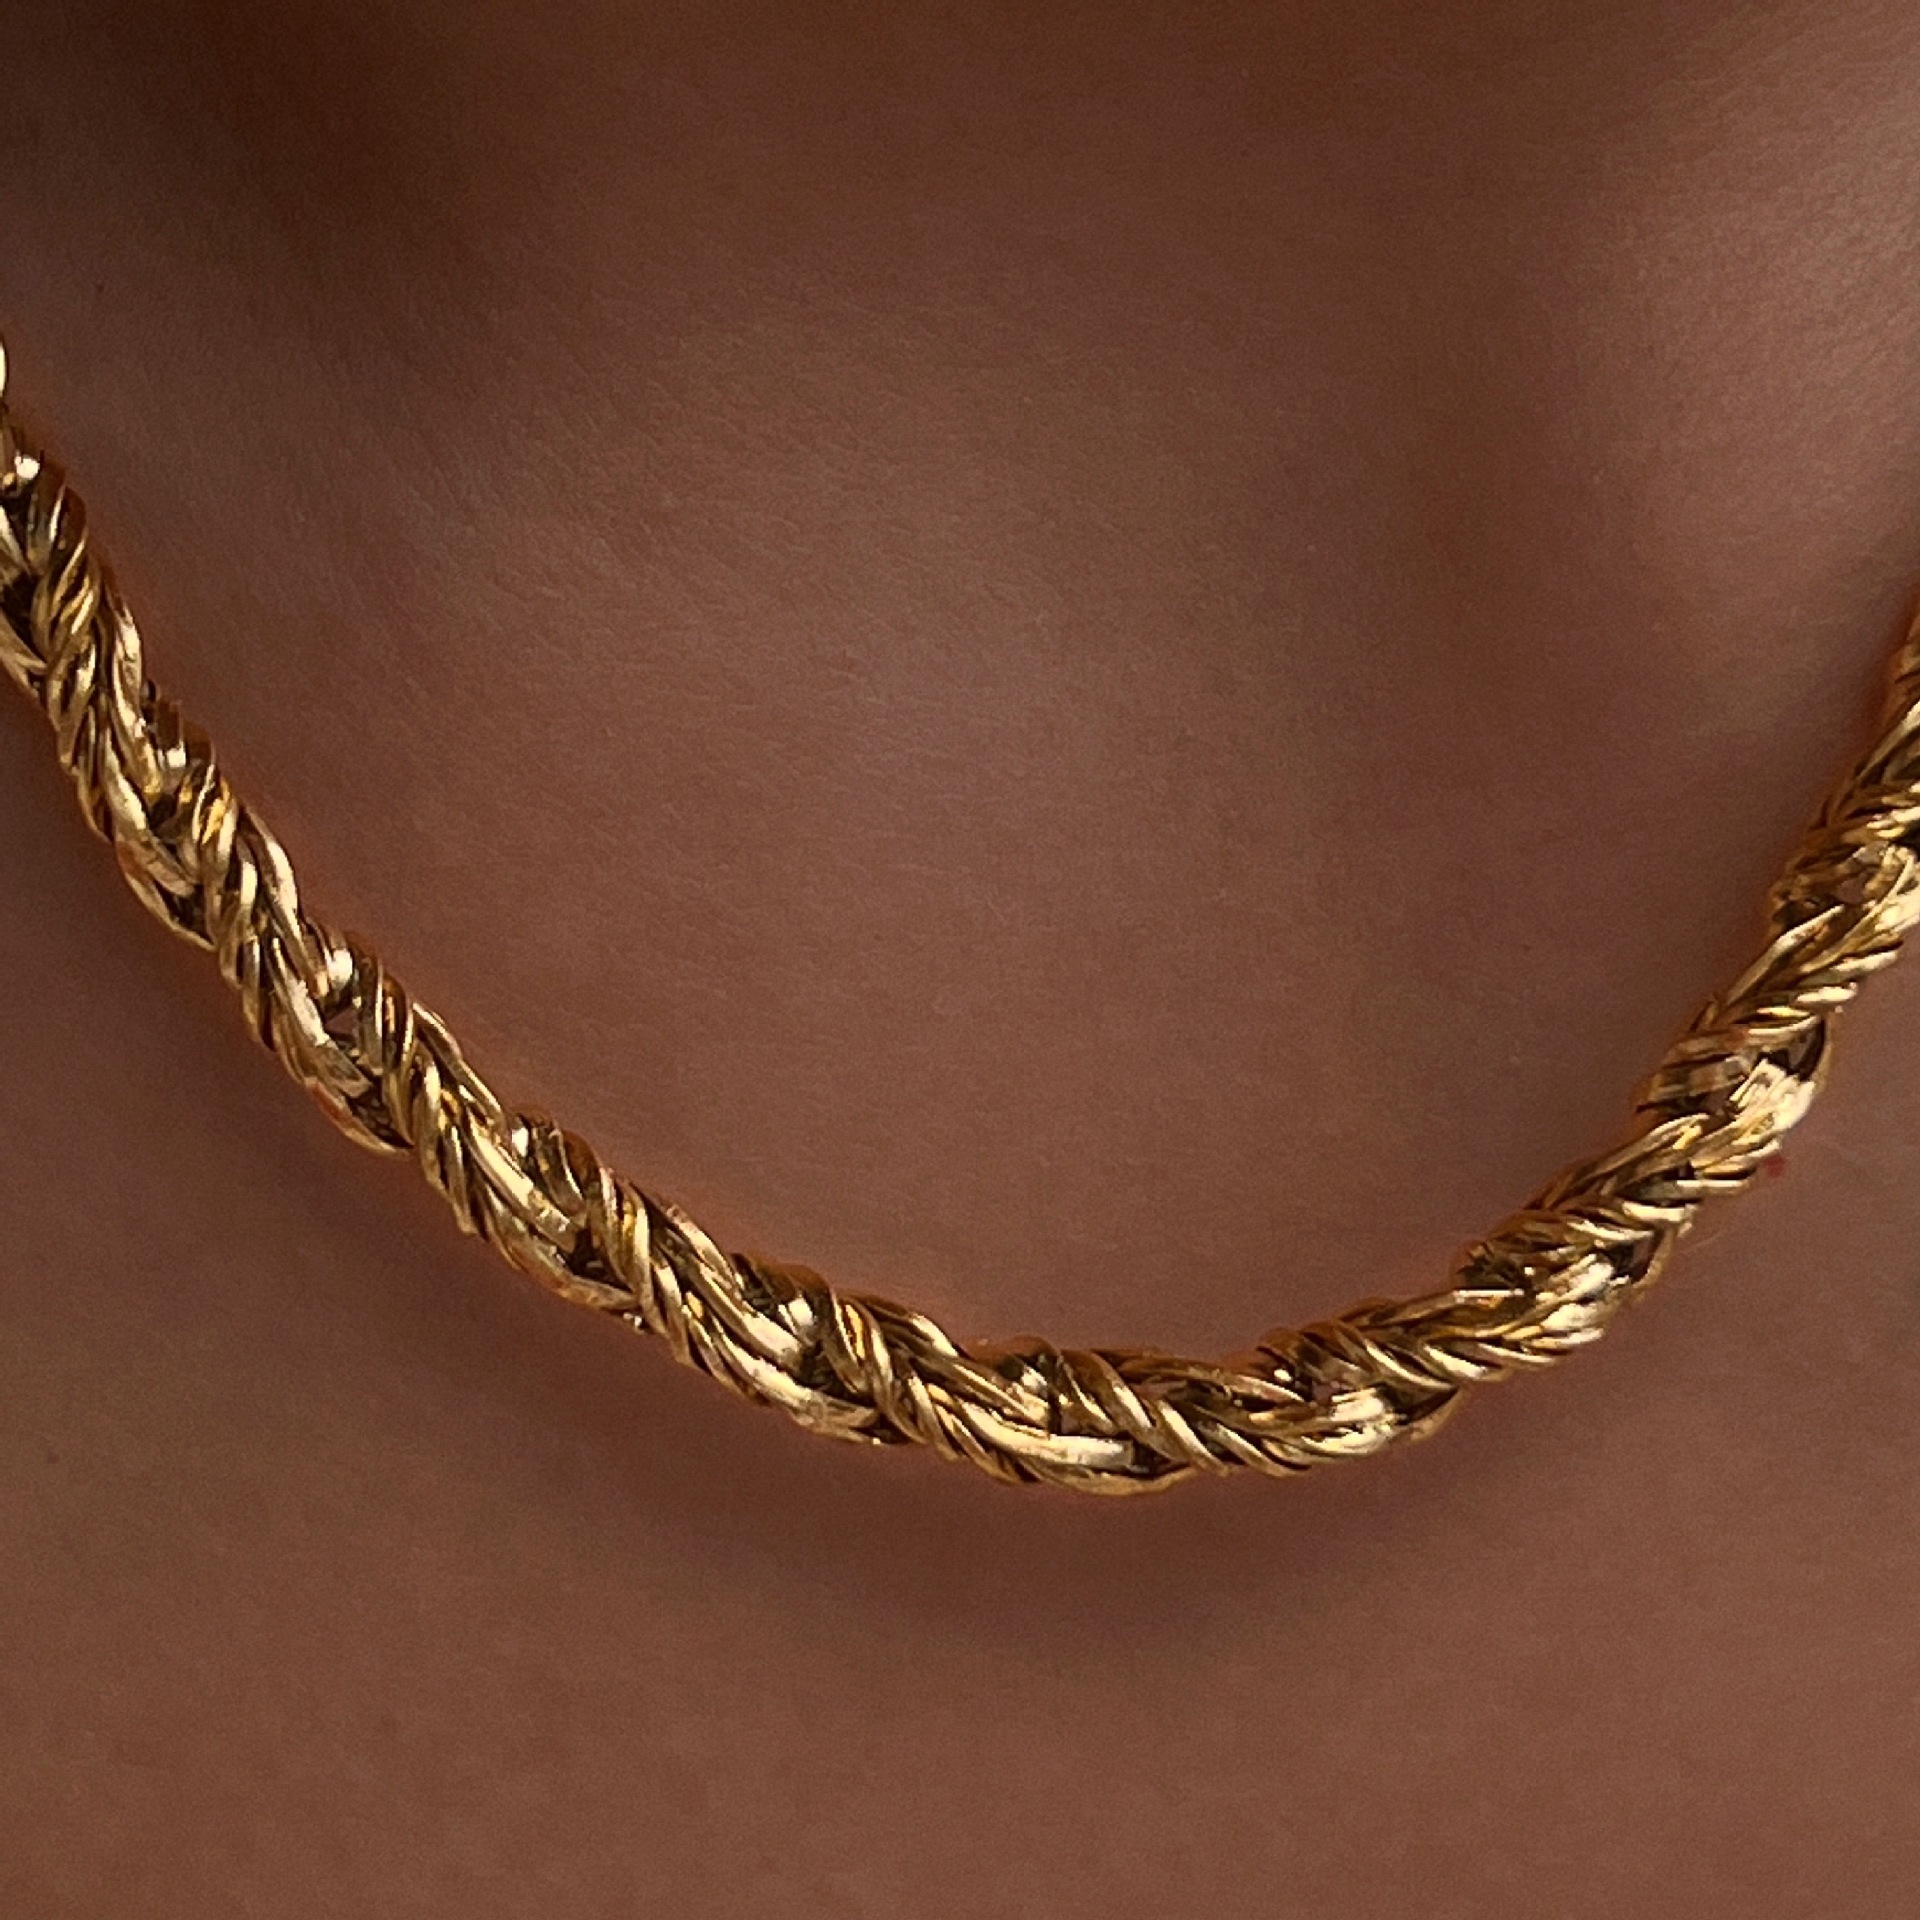 40 * 5cm necklace